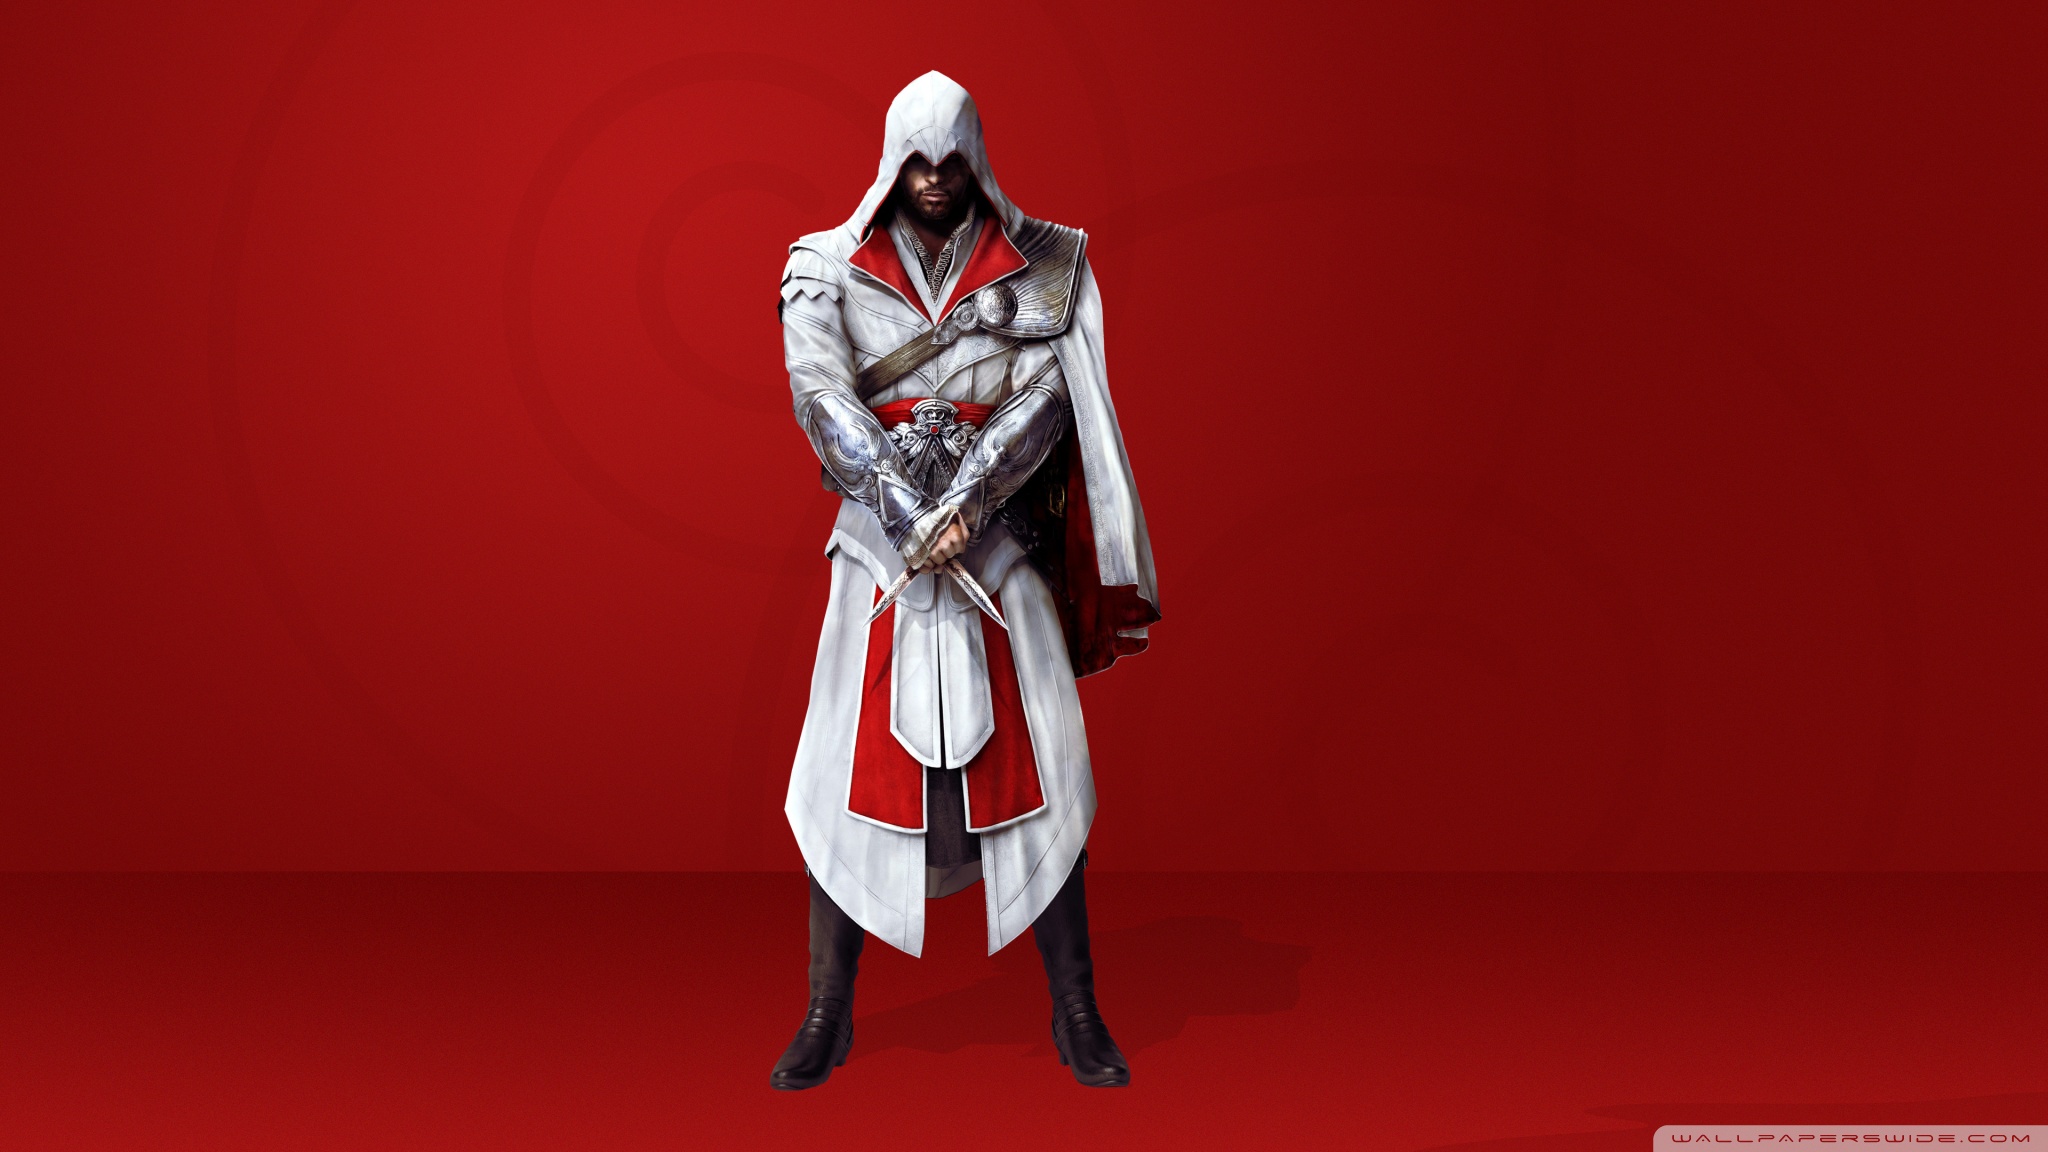 Assassin's Creed Brotherhood HD desktop wallpaper : Widescreen ...